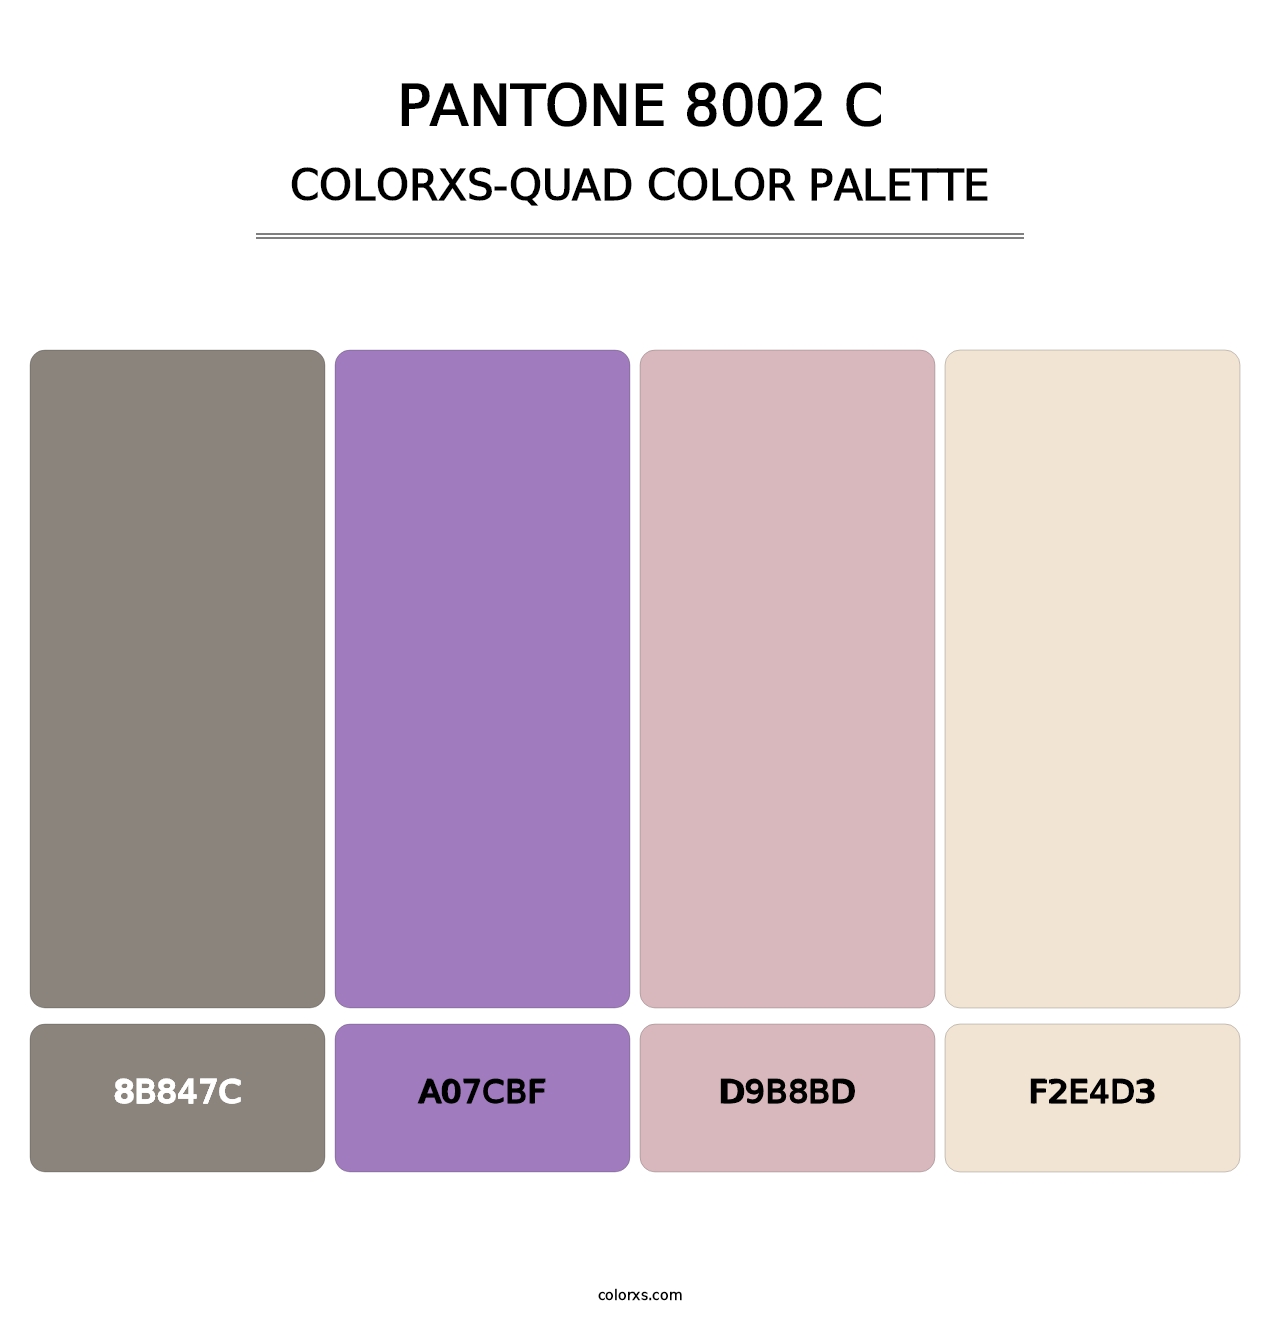 PANTONE 8002 C - Colorxs Quad Palette